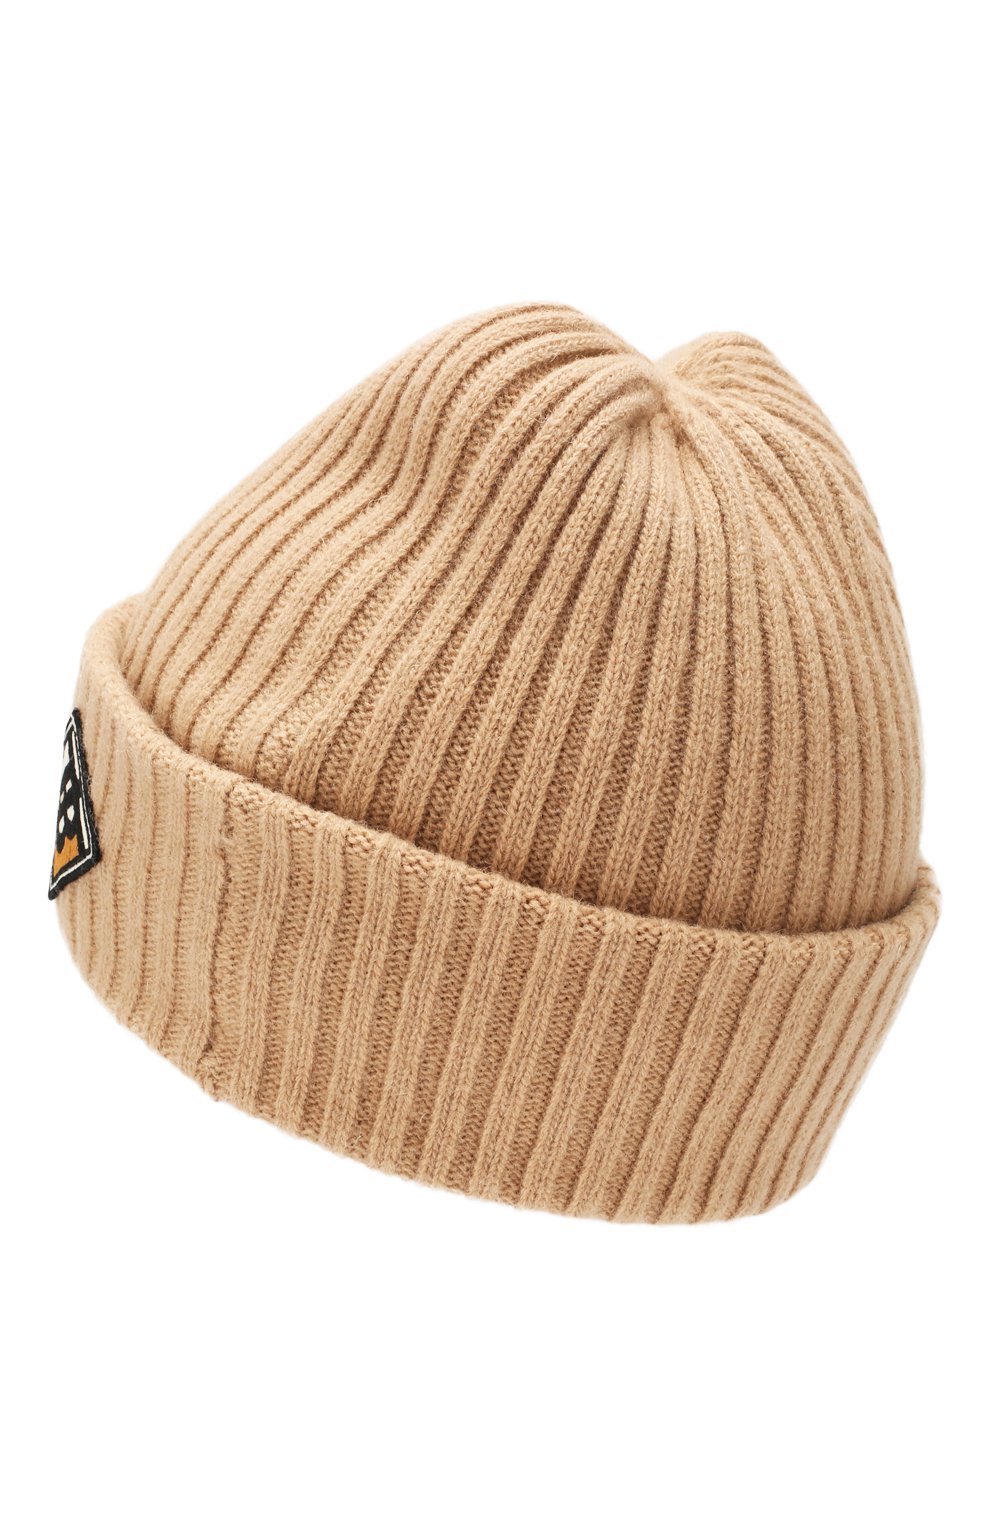 Женская шерстяная шапка BURBERRY бежевого цвета, арт. 8022868 | Фото 2 (Материал: Текстиль, Шерсть)